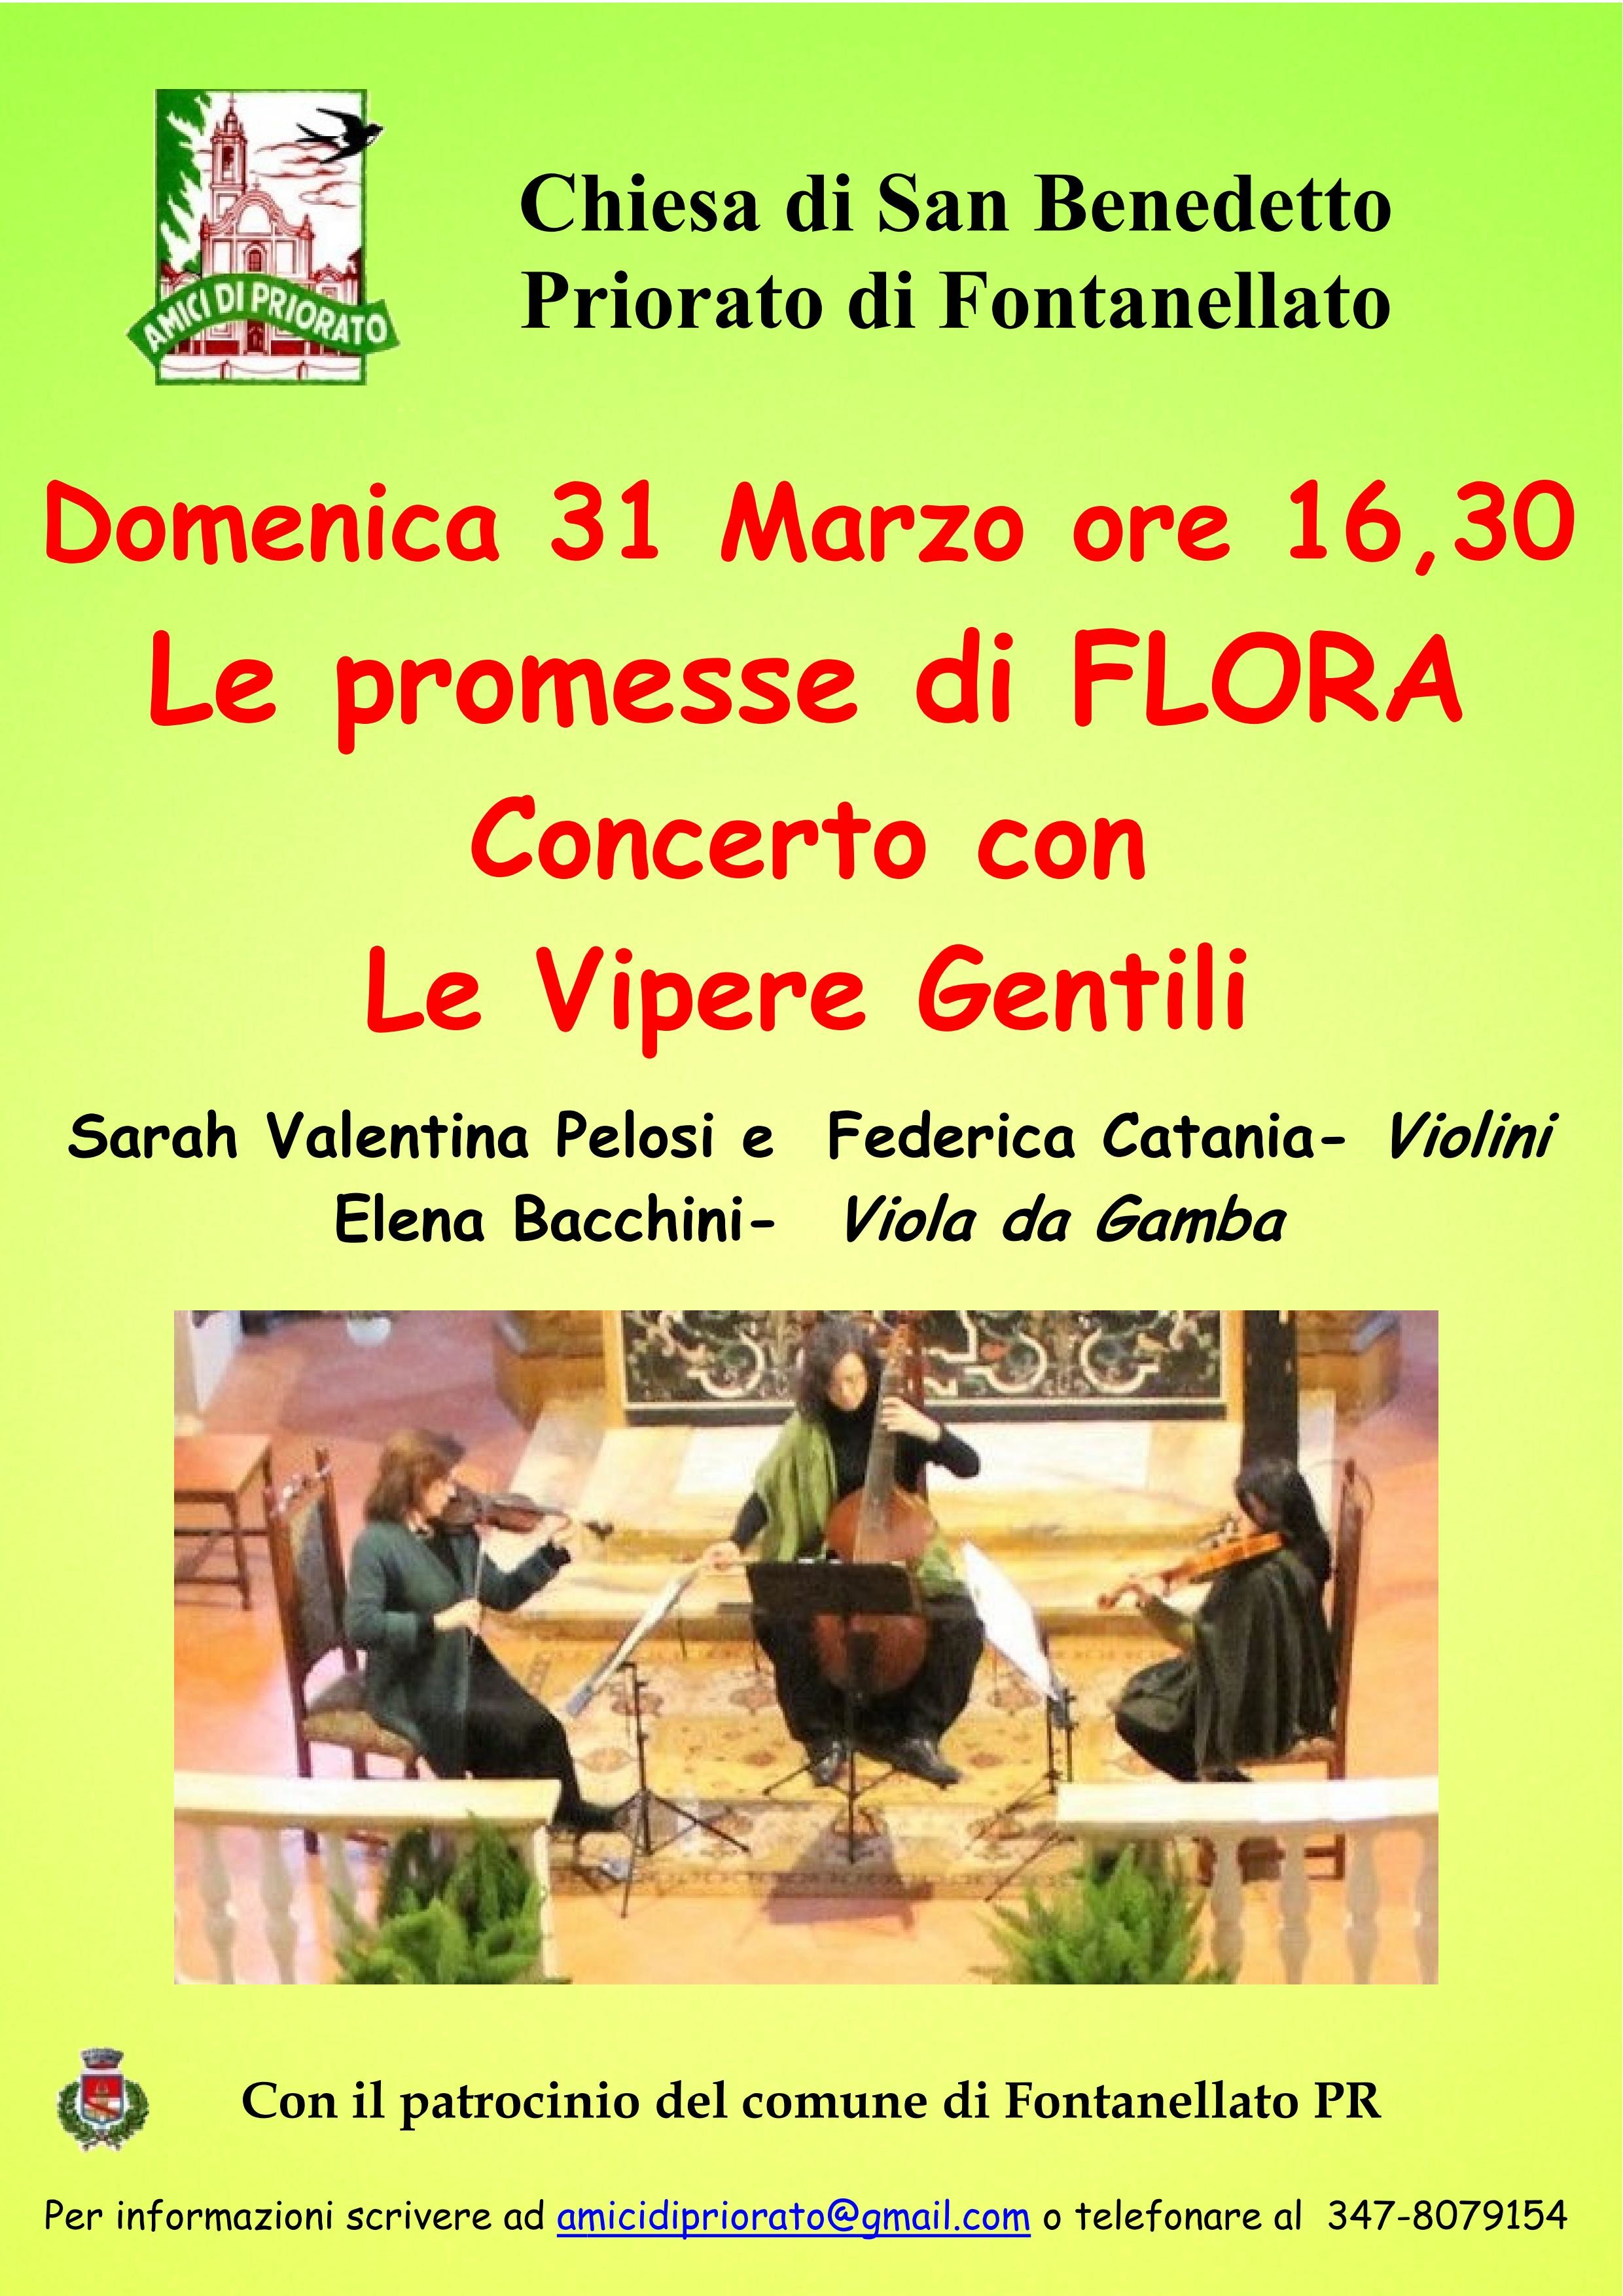 Le promesse di Flora, concerto con le Vipere gentili a Priorato